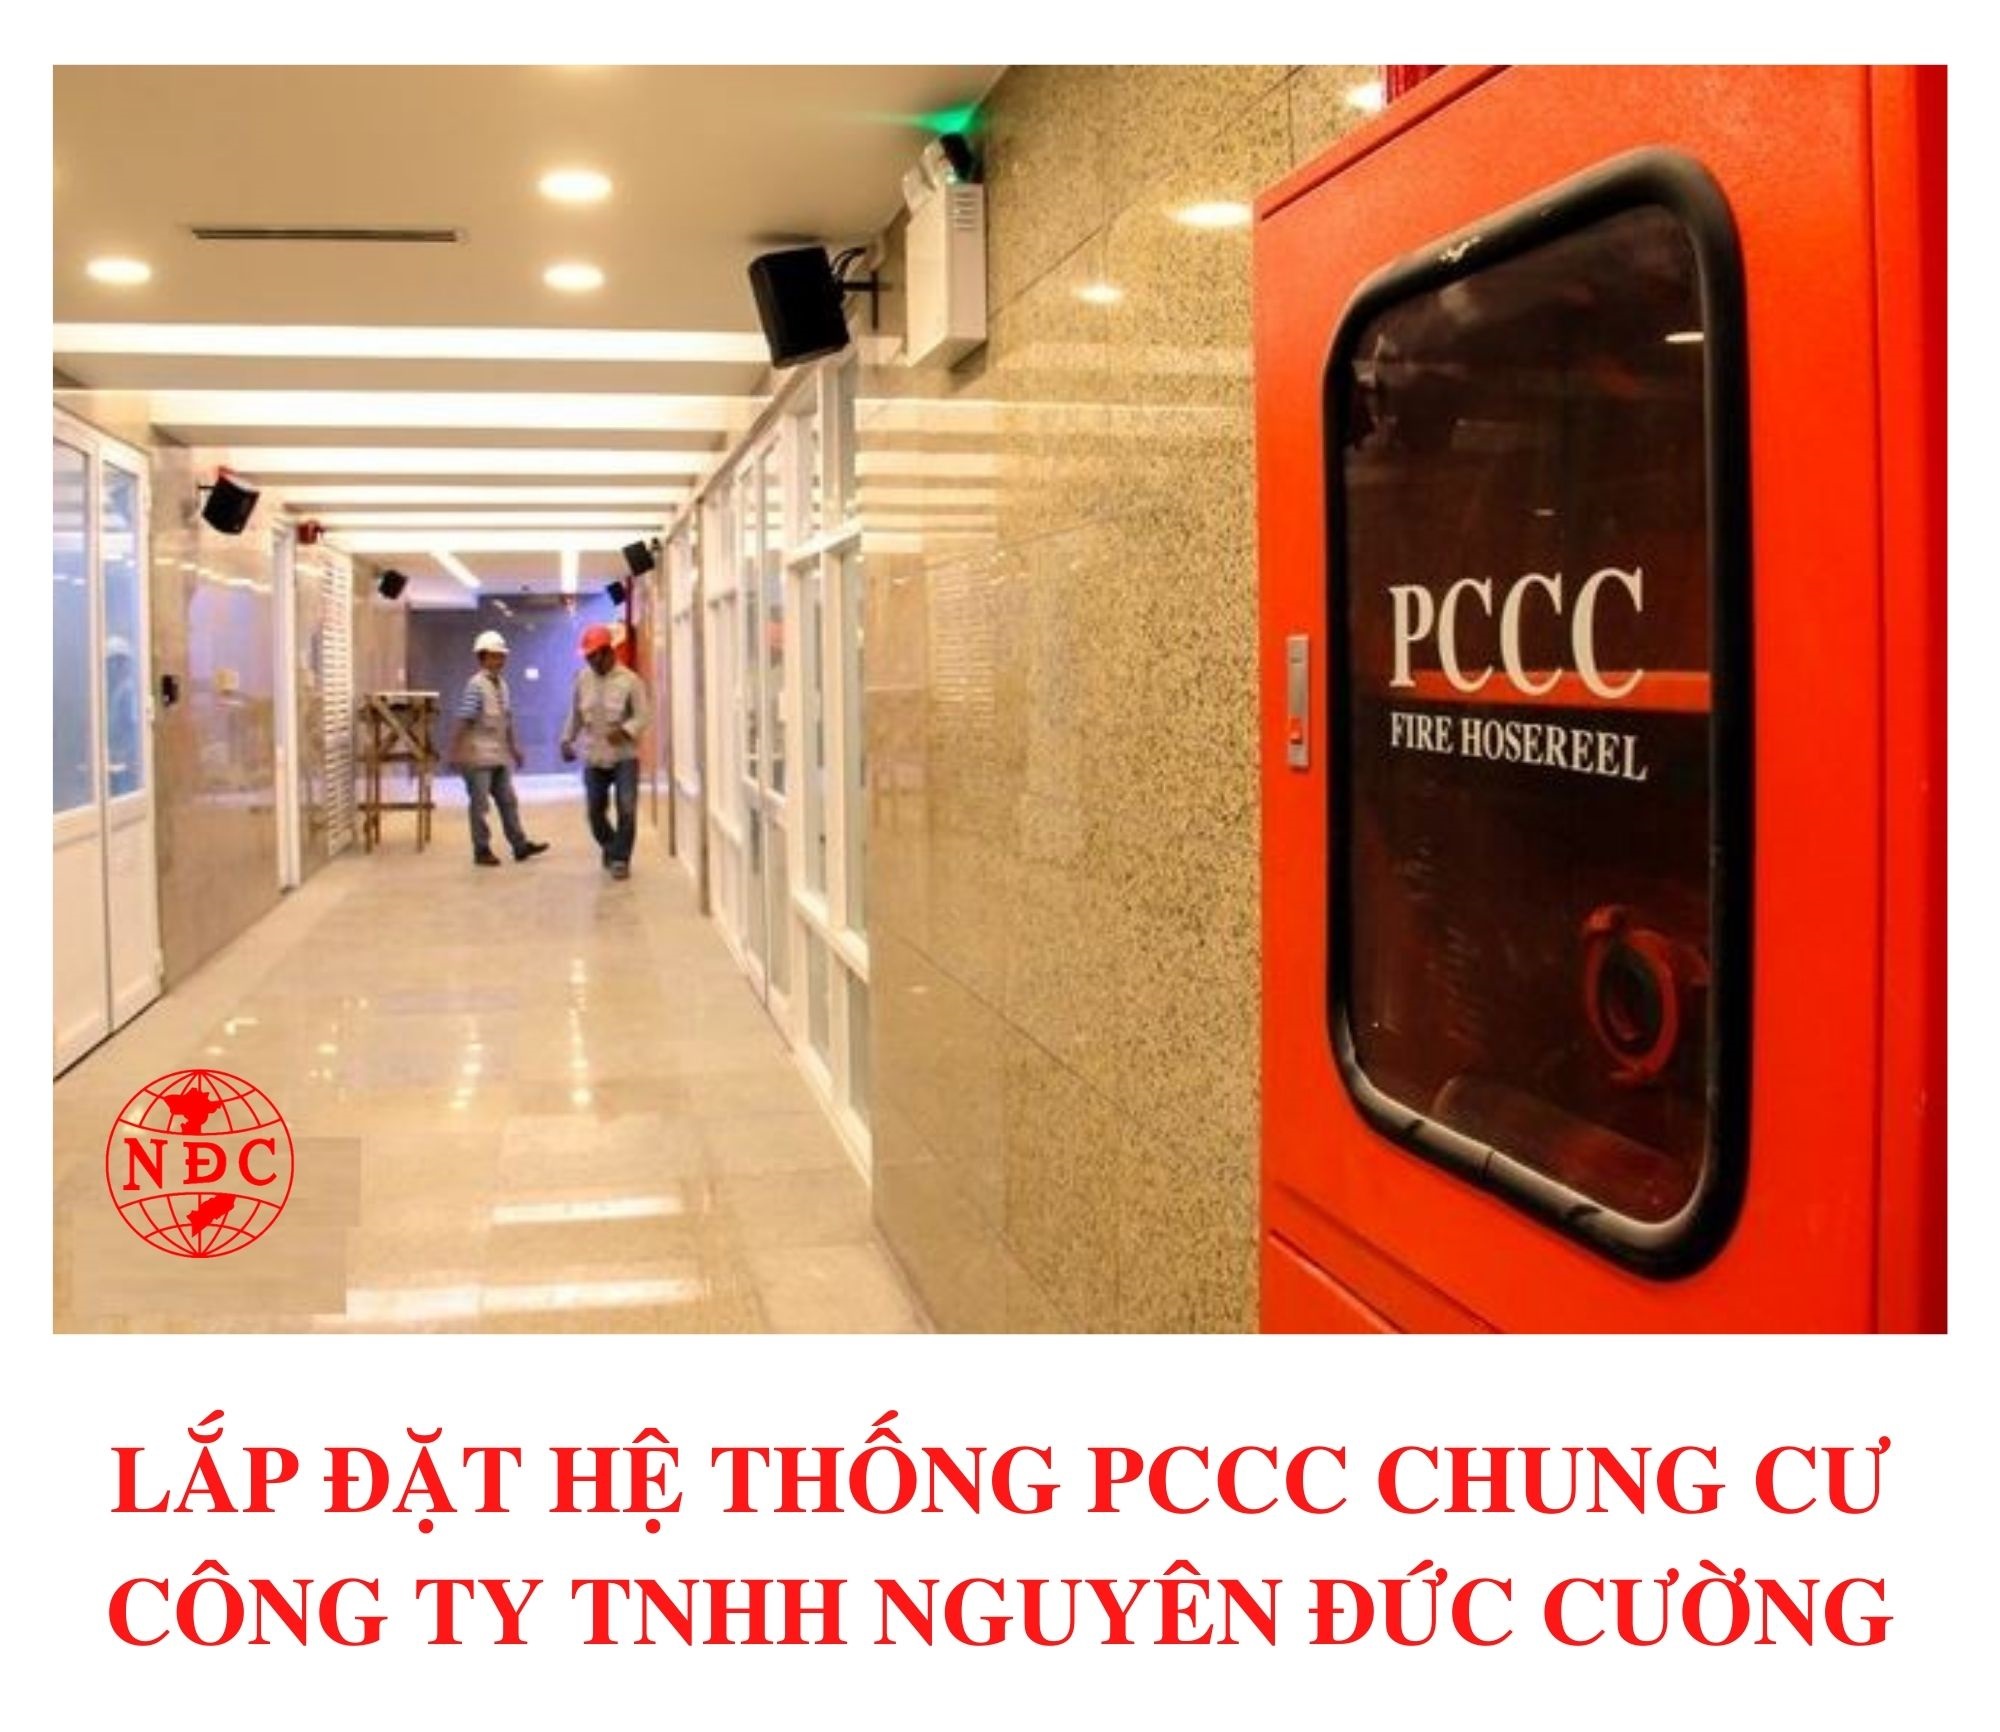 PCCC Chung Cư – Những Thiết Bị Cần Lắp Cho Chung Cư